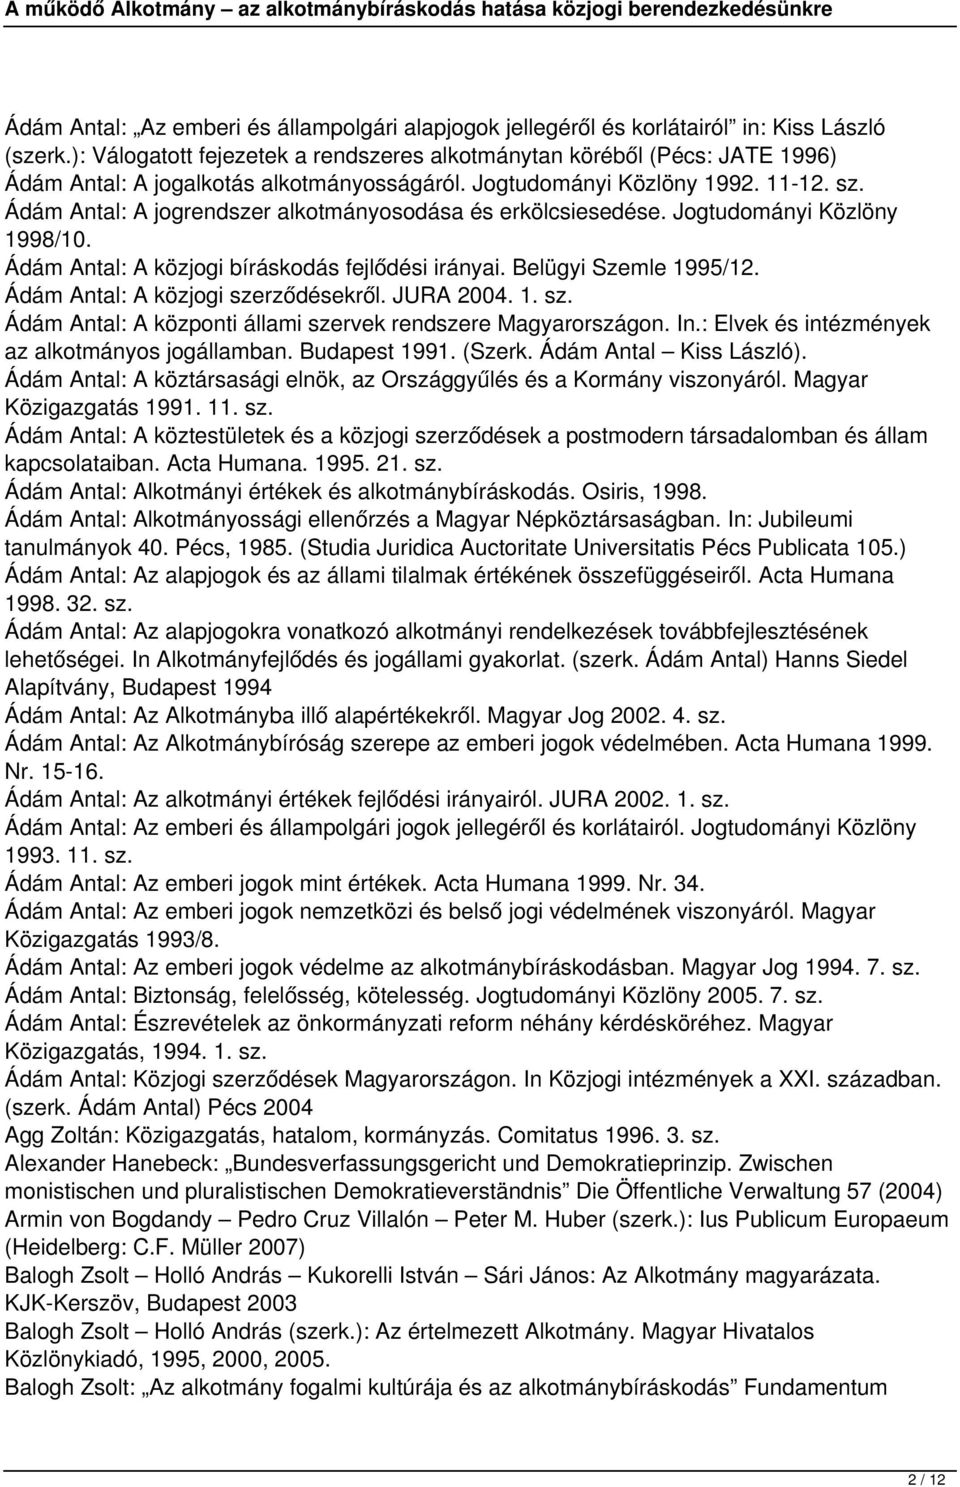 Ádám Antal: A jogrendszer alkotmányosodása és erkölcsiesedése. Jogtudományi Közlöny 1998/10. Ádám Antal: A közjogi bíráskodás fejlődési irányai. Belügyi Szemle 1995/12.